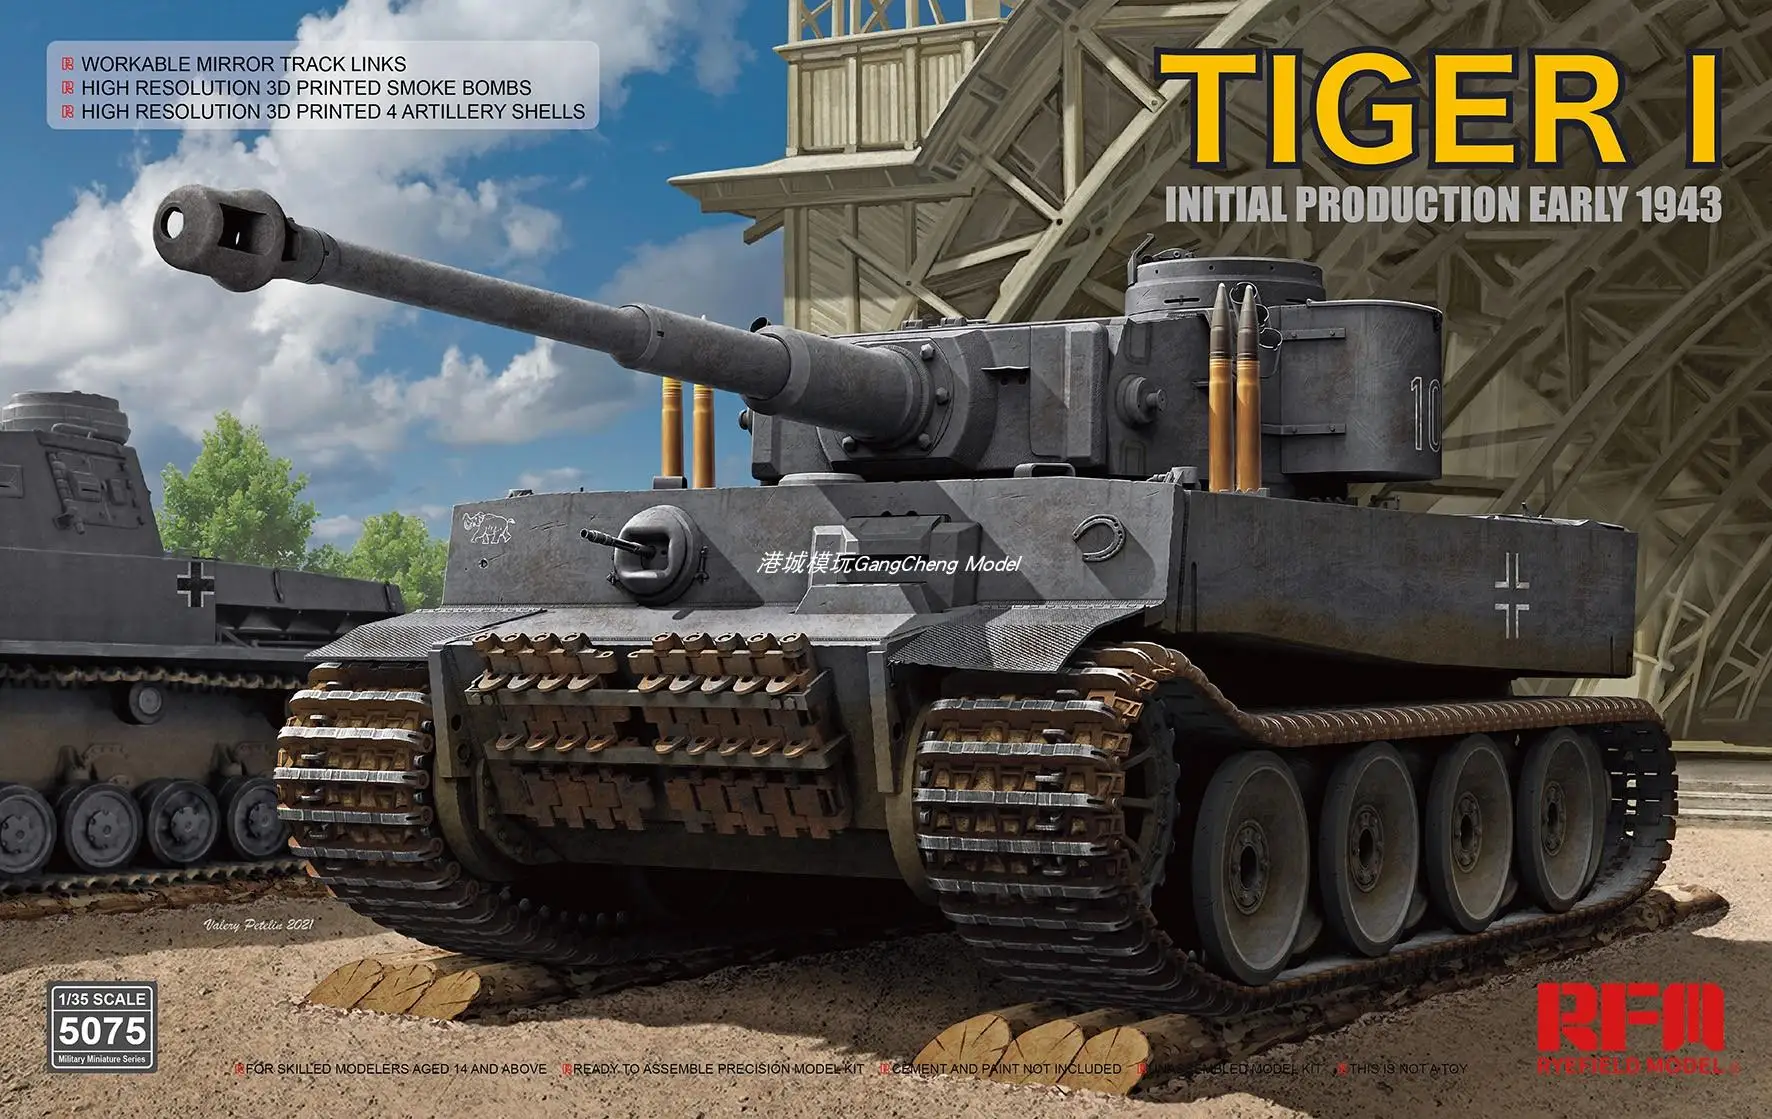 Модель RYEFIELD RM-5075 1/35 Tiger I начальное производство ранняя модель 1943 - купить по